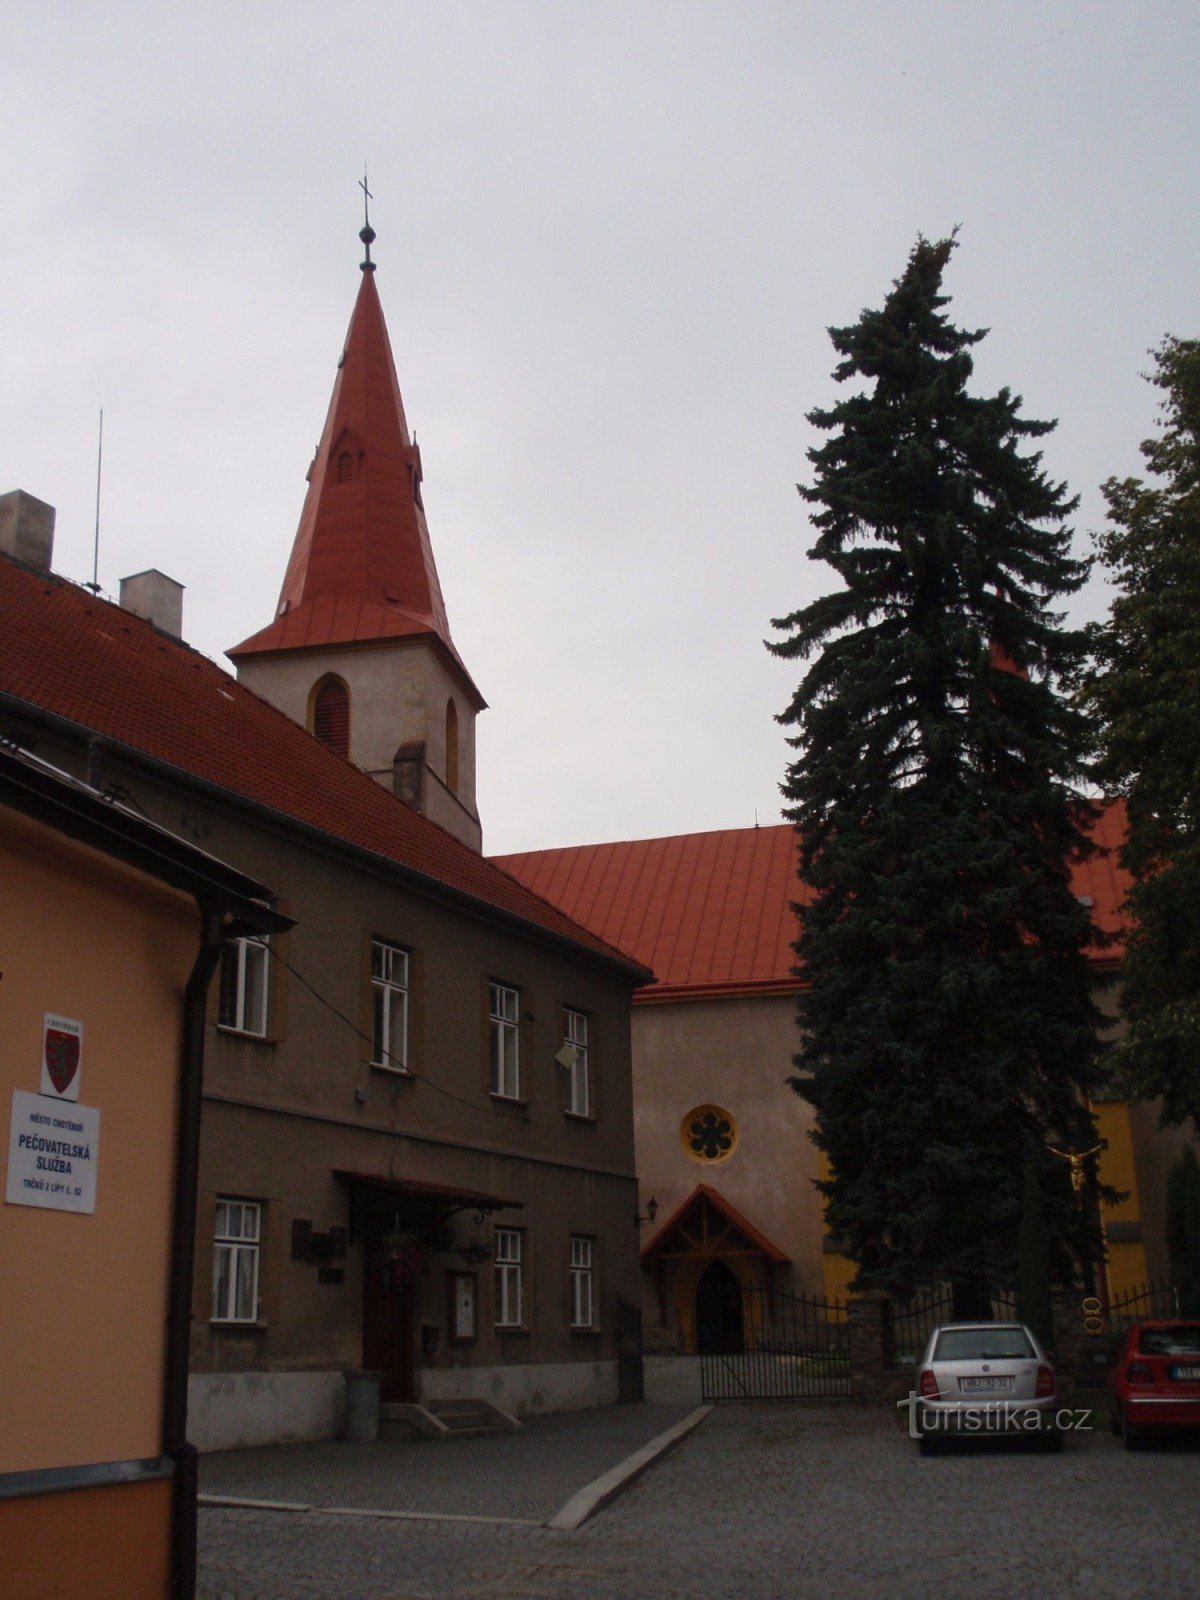 Monumente bisericești ale orașului Chotěboře